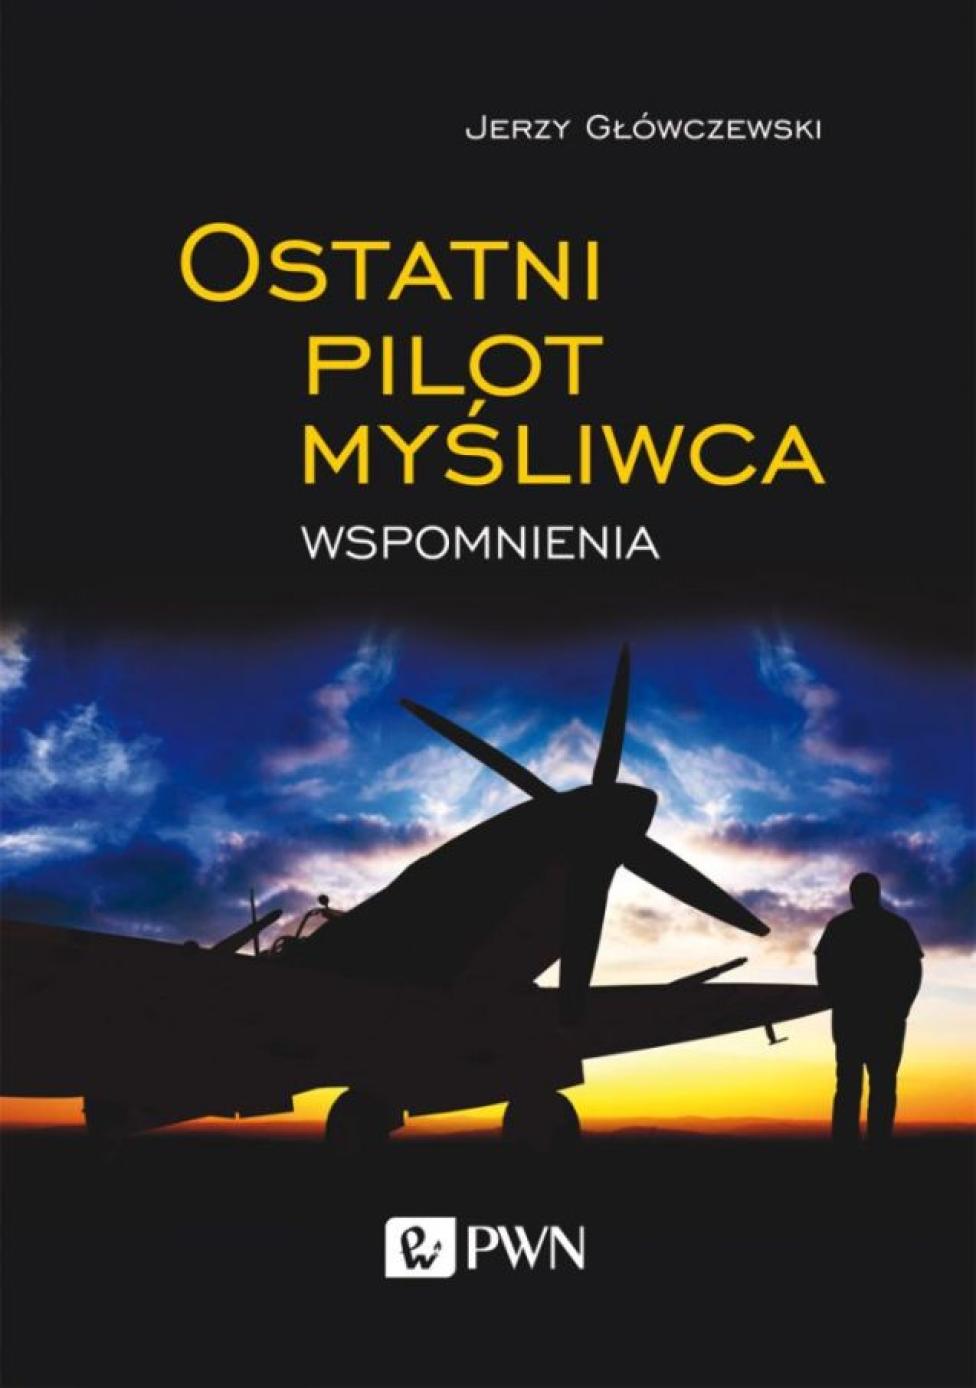 Książka: "Ostatni pilot myśliwca. Wspomnienia" Jerzego Główczewskiego